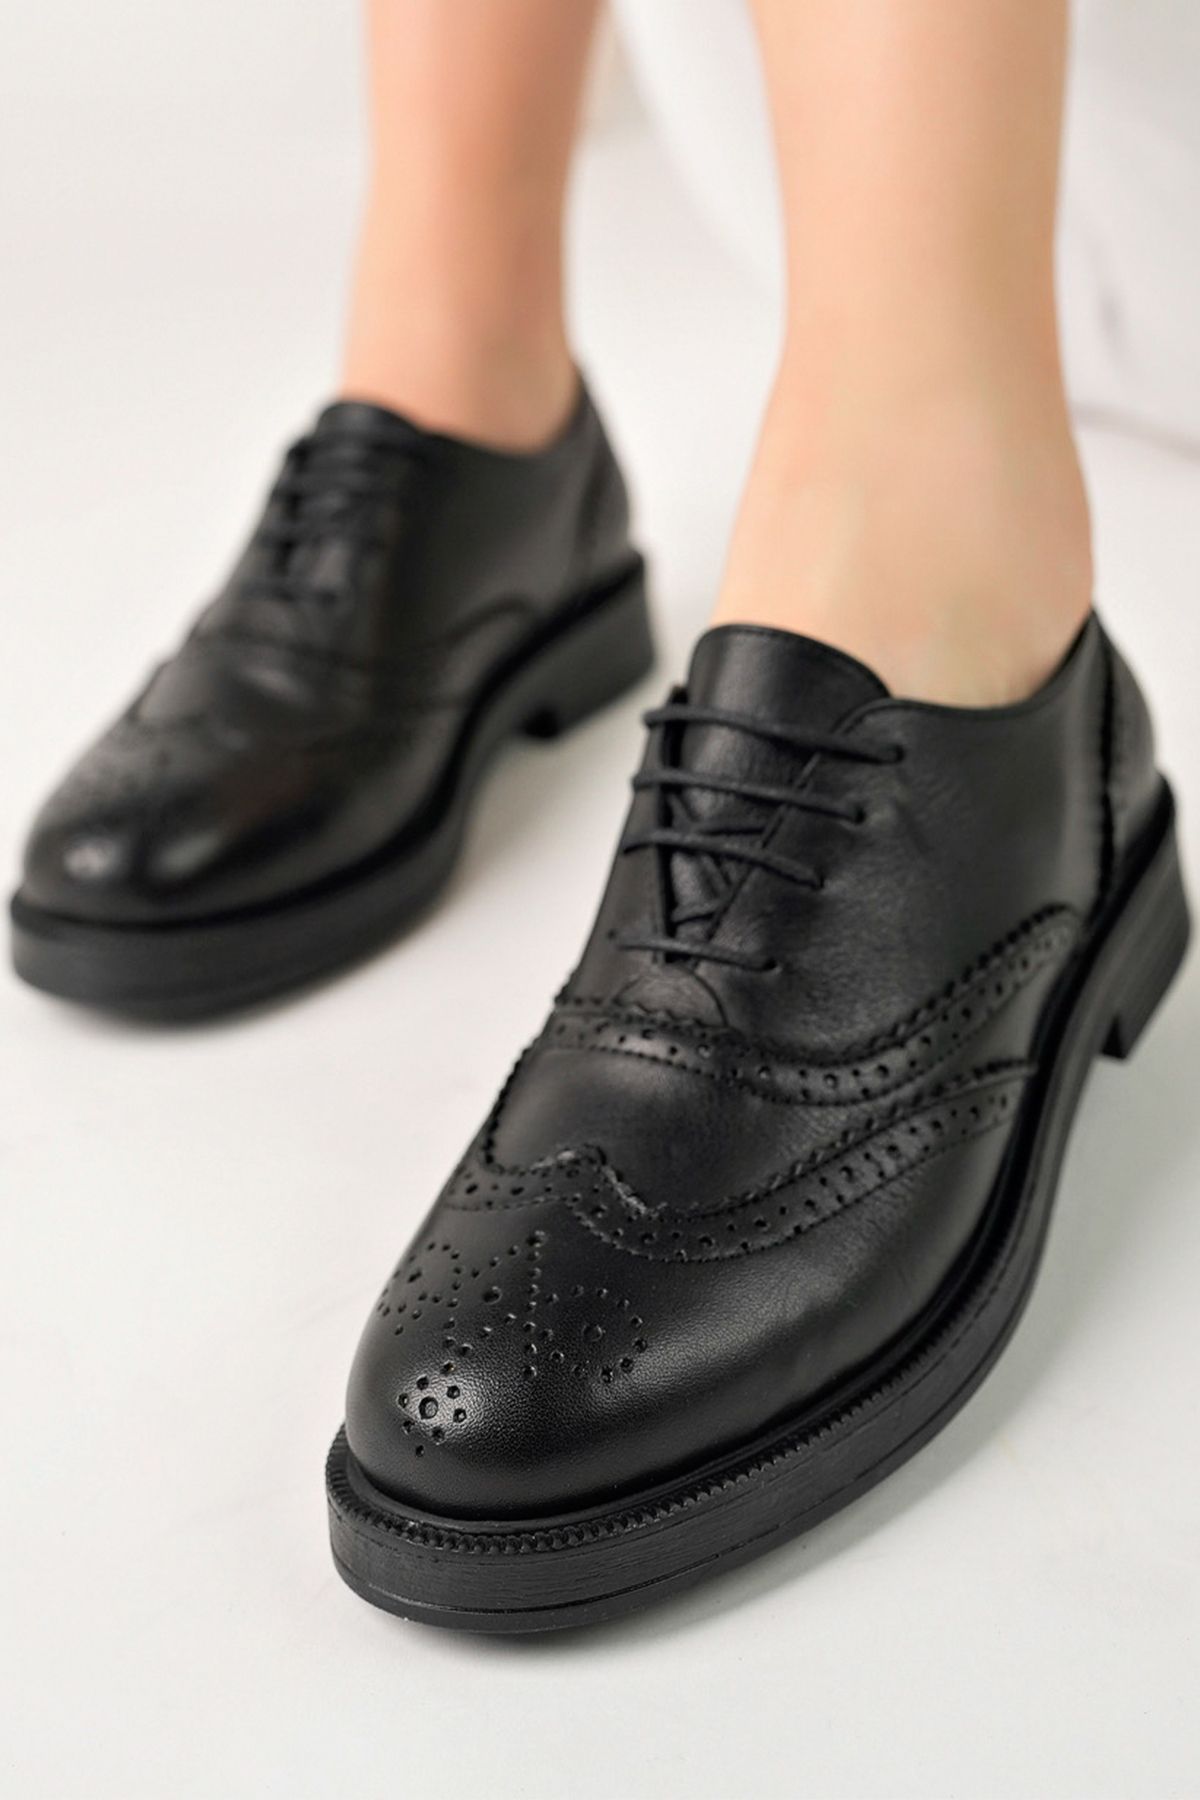 GRADA Hakiki Deri Bağcıklı Kadın Siyah Oxford Ayakkabı Kadın Oxford Brogue Klasik Deri Ayakkabı Günlük